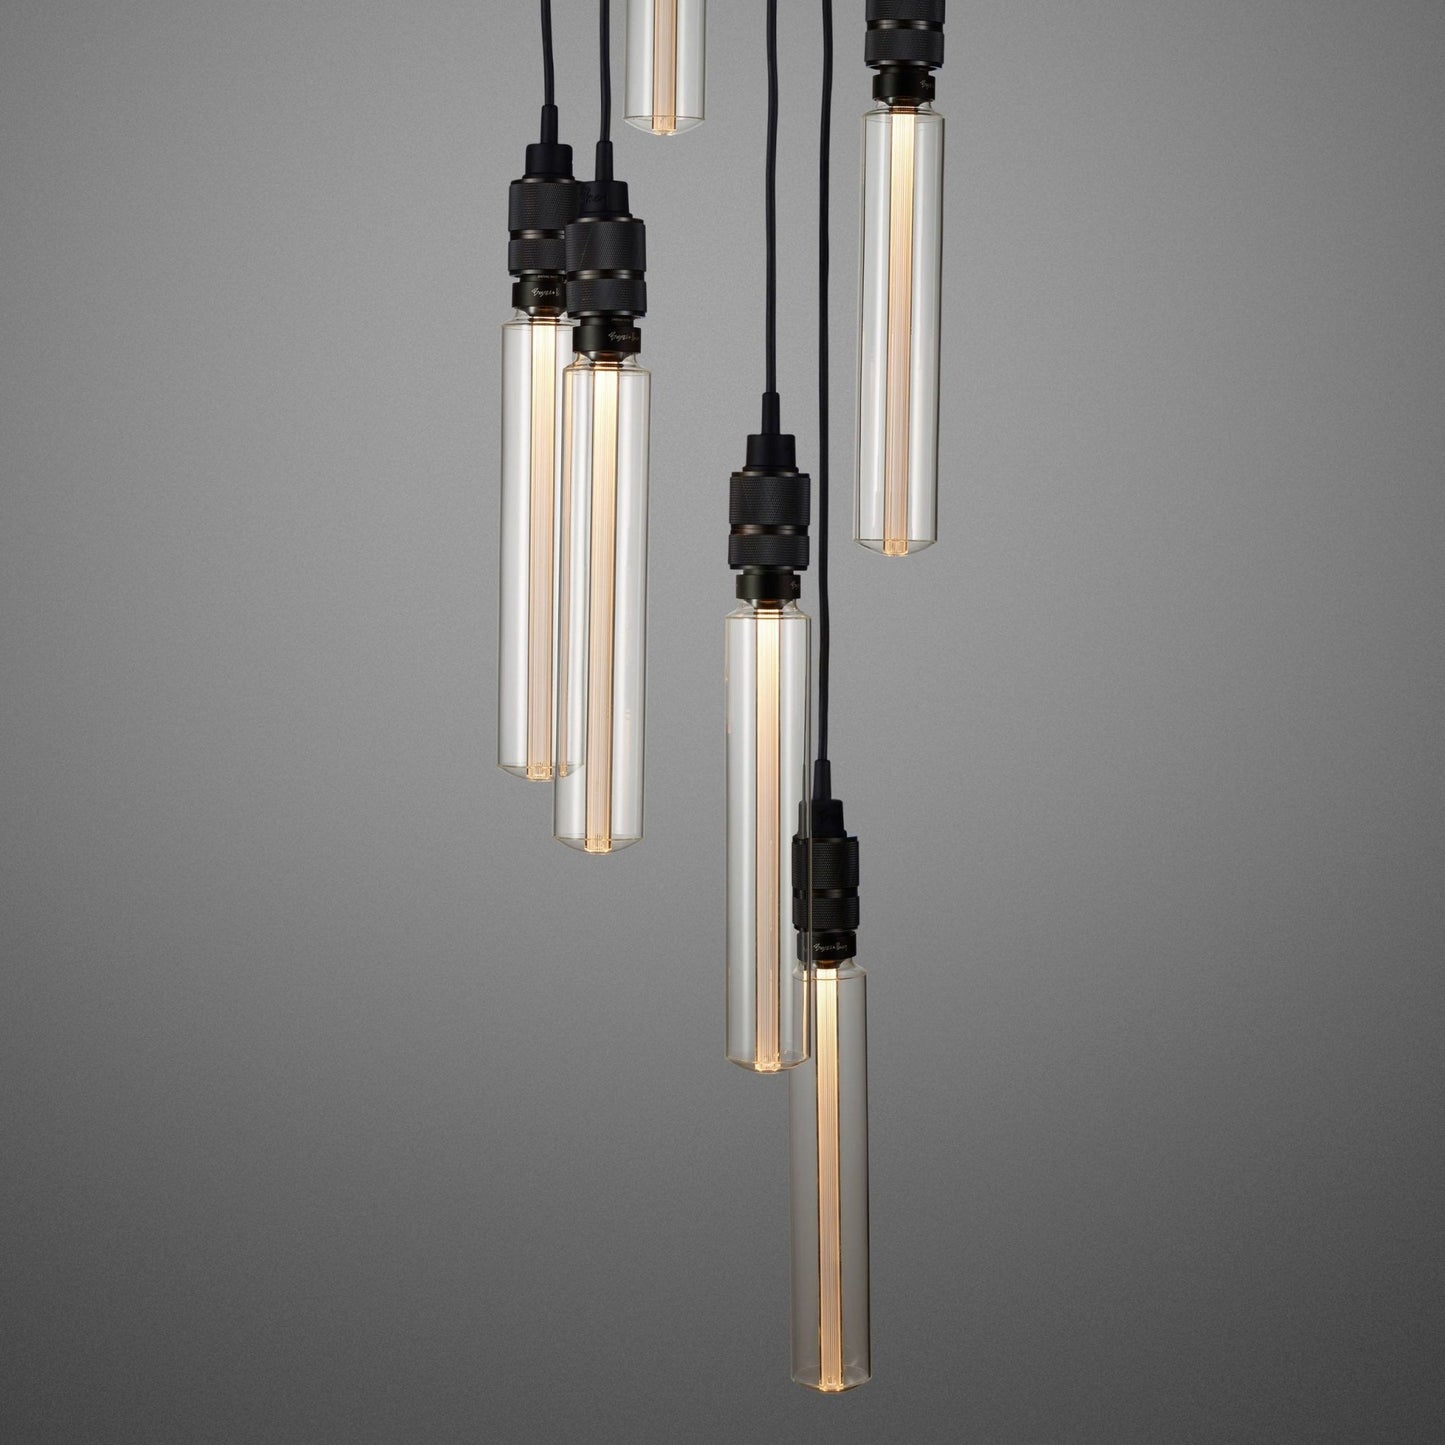 Hooked Pendant Light Chandelier 6.0 / Brass / Smoked Bronze / Steel - |VESIMI Design| Luxury and Rustic bathrooms online